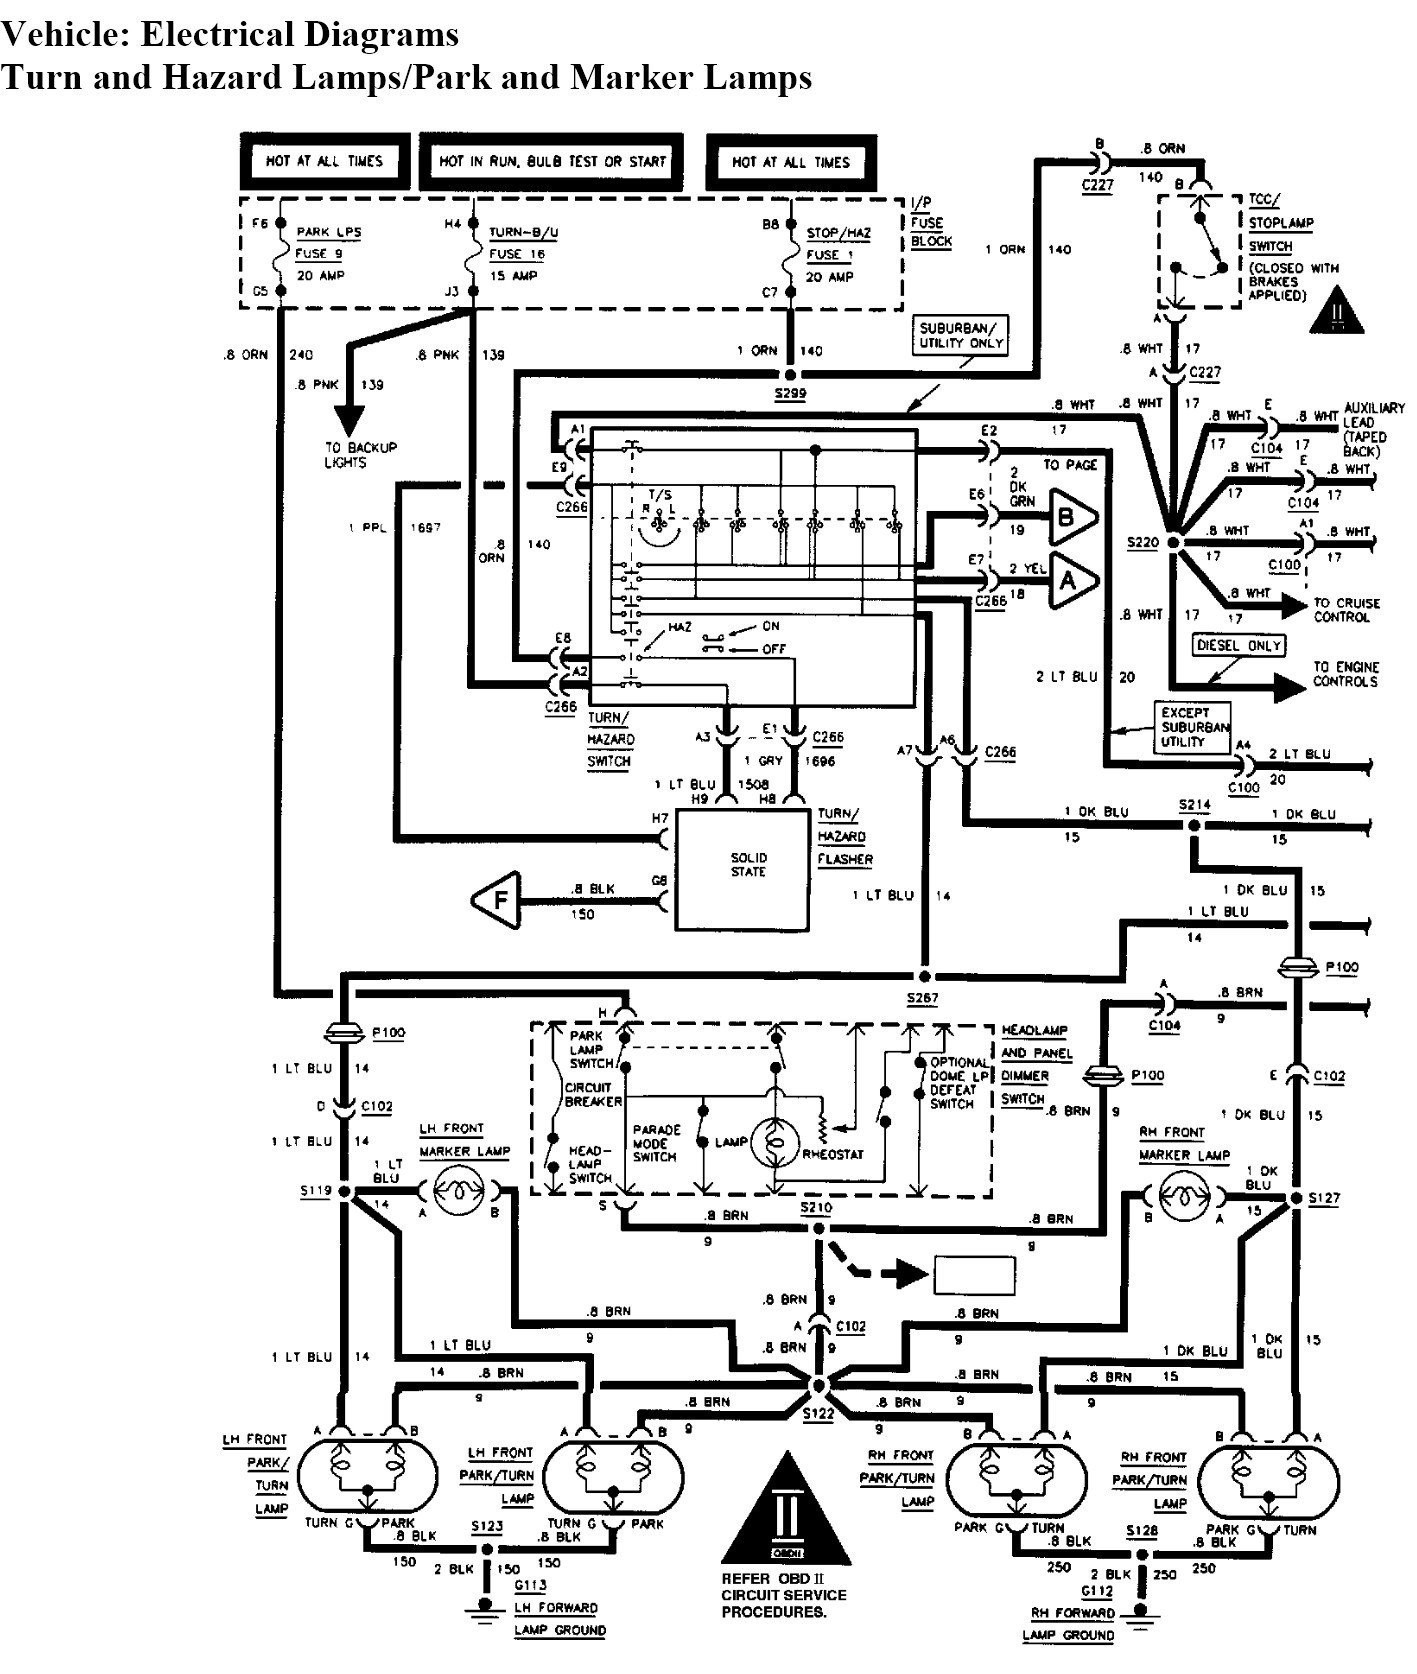 2000 Chevy Silverado Brake Light Switch Wiring Diagram New Brake Light Switch Wiring Diagram Wiring